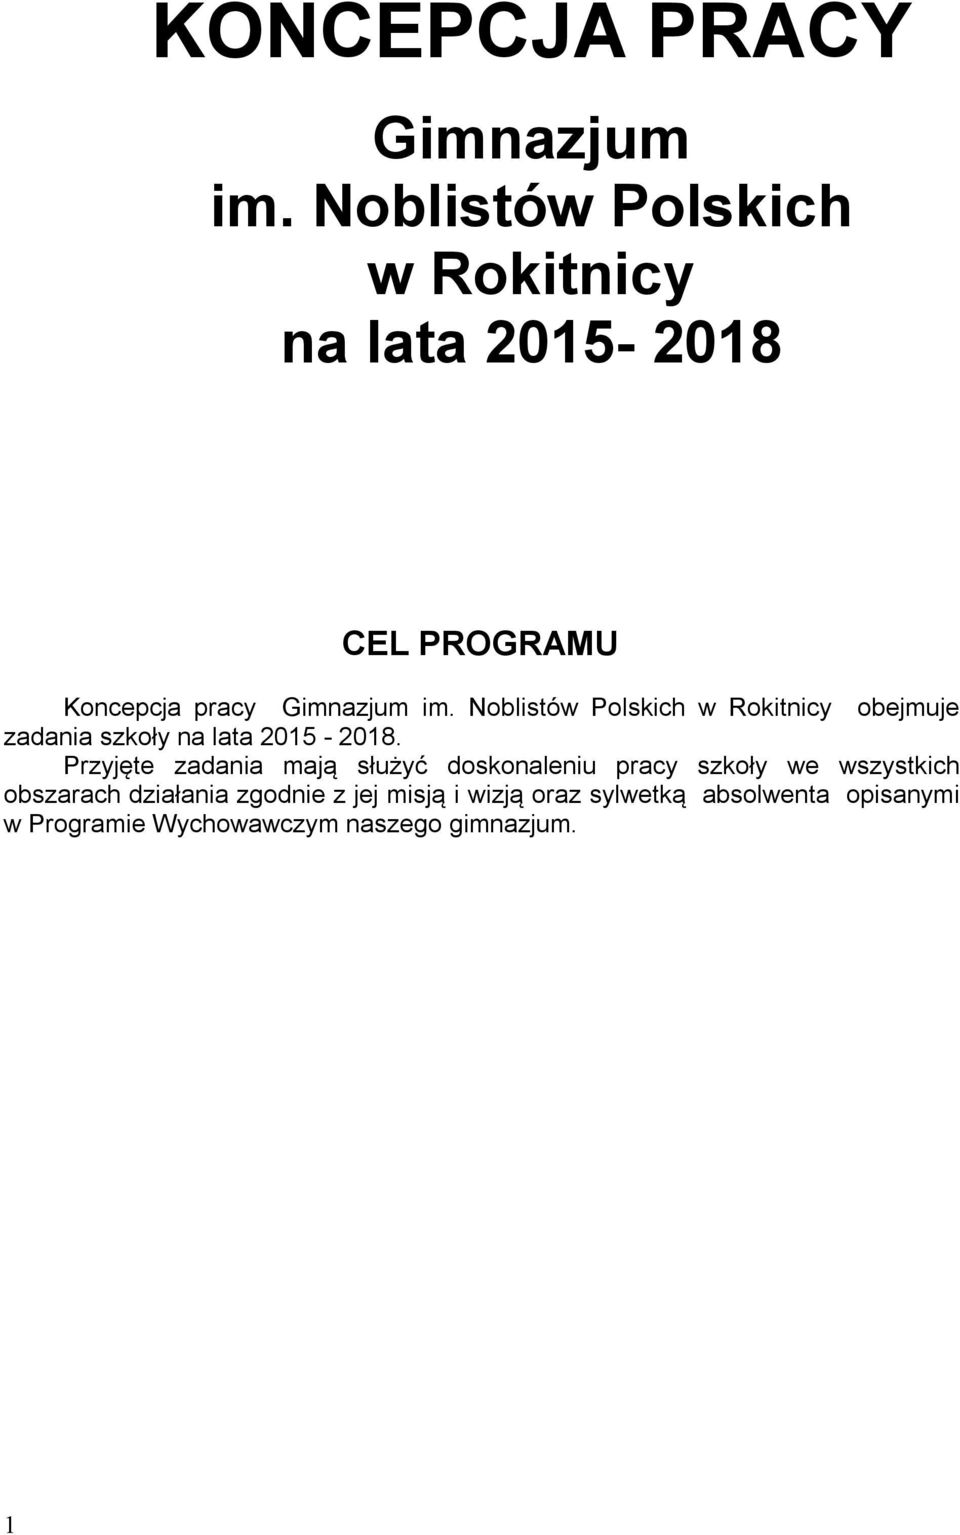 Noblistów Polskich w Rokitnicy obejmuje zadania szkoły na lata 2015-2018.